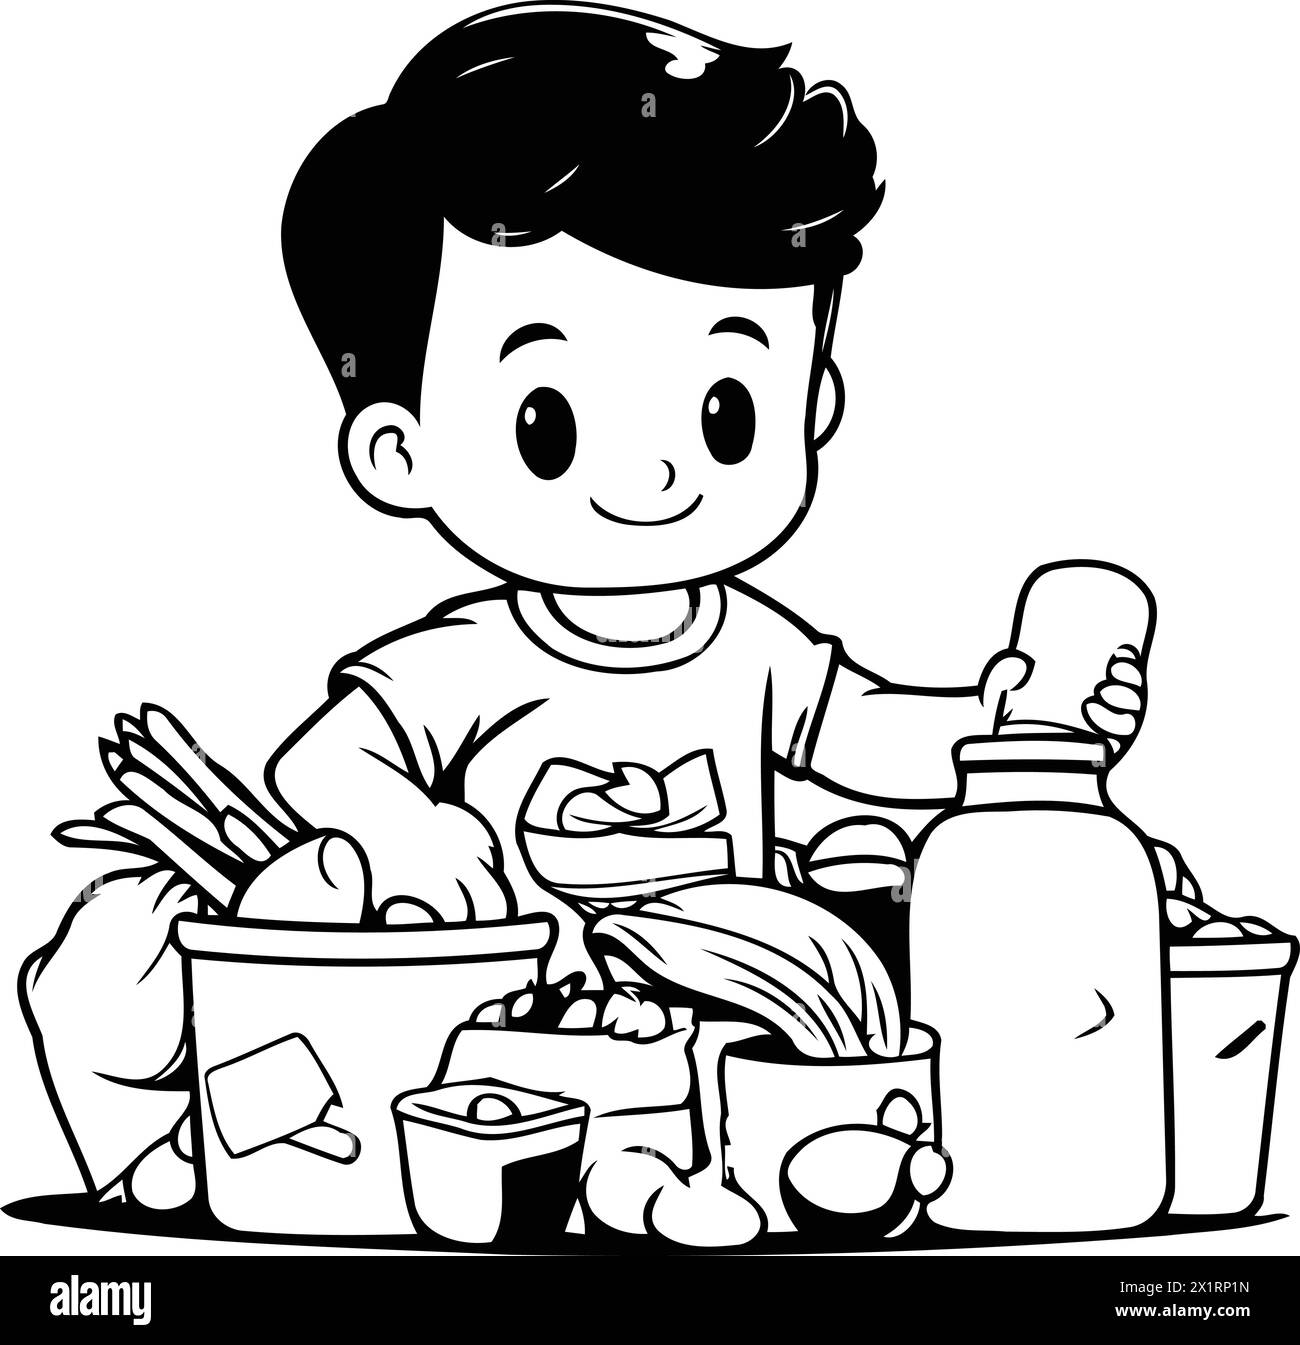 Illustrazione vettoriale di un bambino che mangia cibo sano. Stile cartoni animati. Concetto di cibo sano. Illustrazione Vettoriale